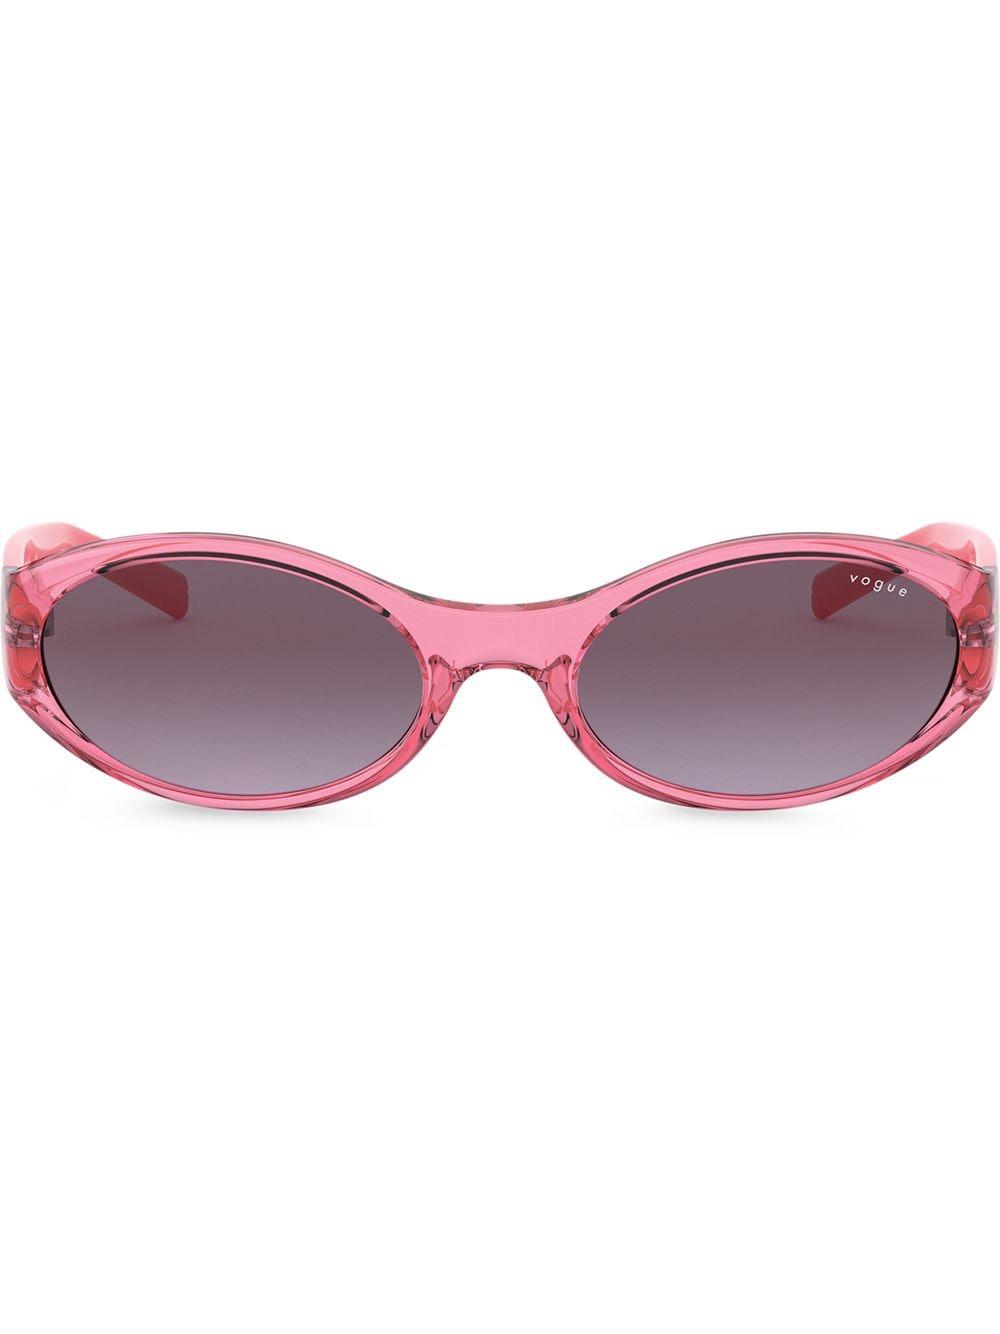 Vogue Eyewear X Millie Bobby Brown ovale Sonnenbrille in Pink - Lyst